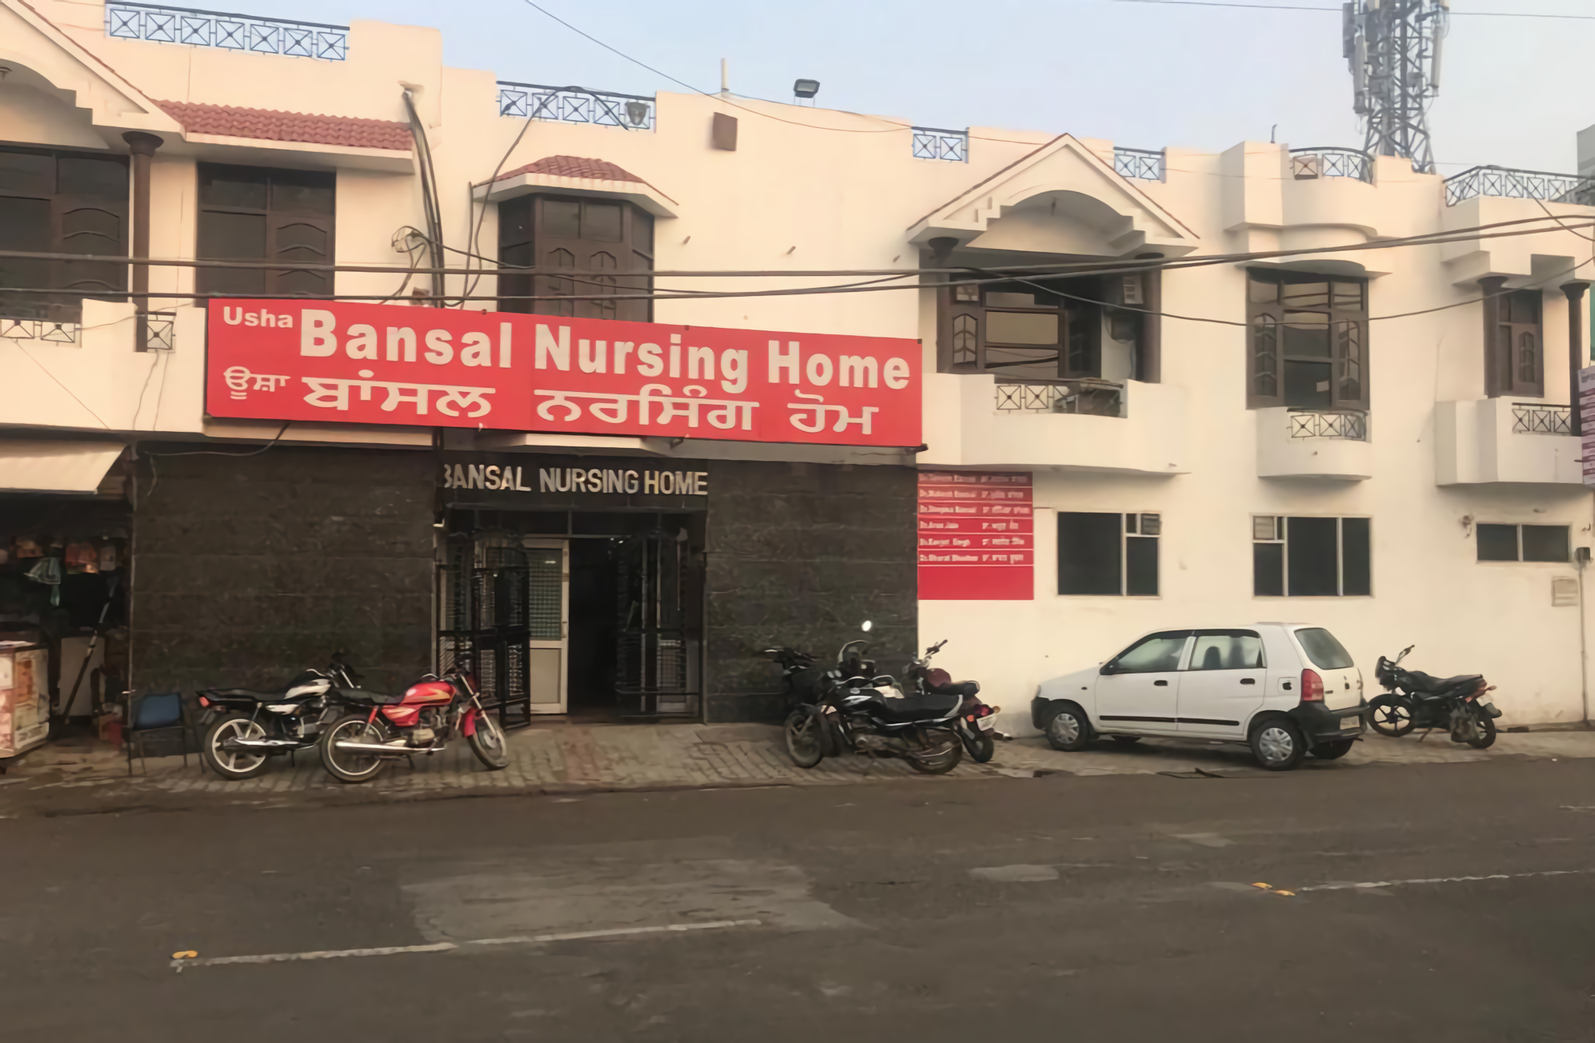 Usha Bansal Nursing Home